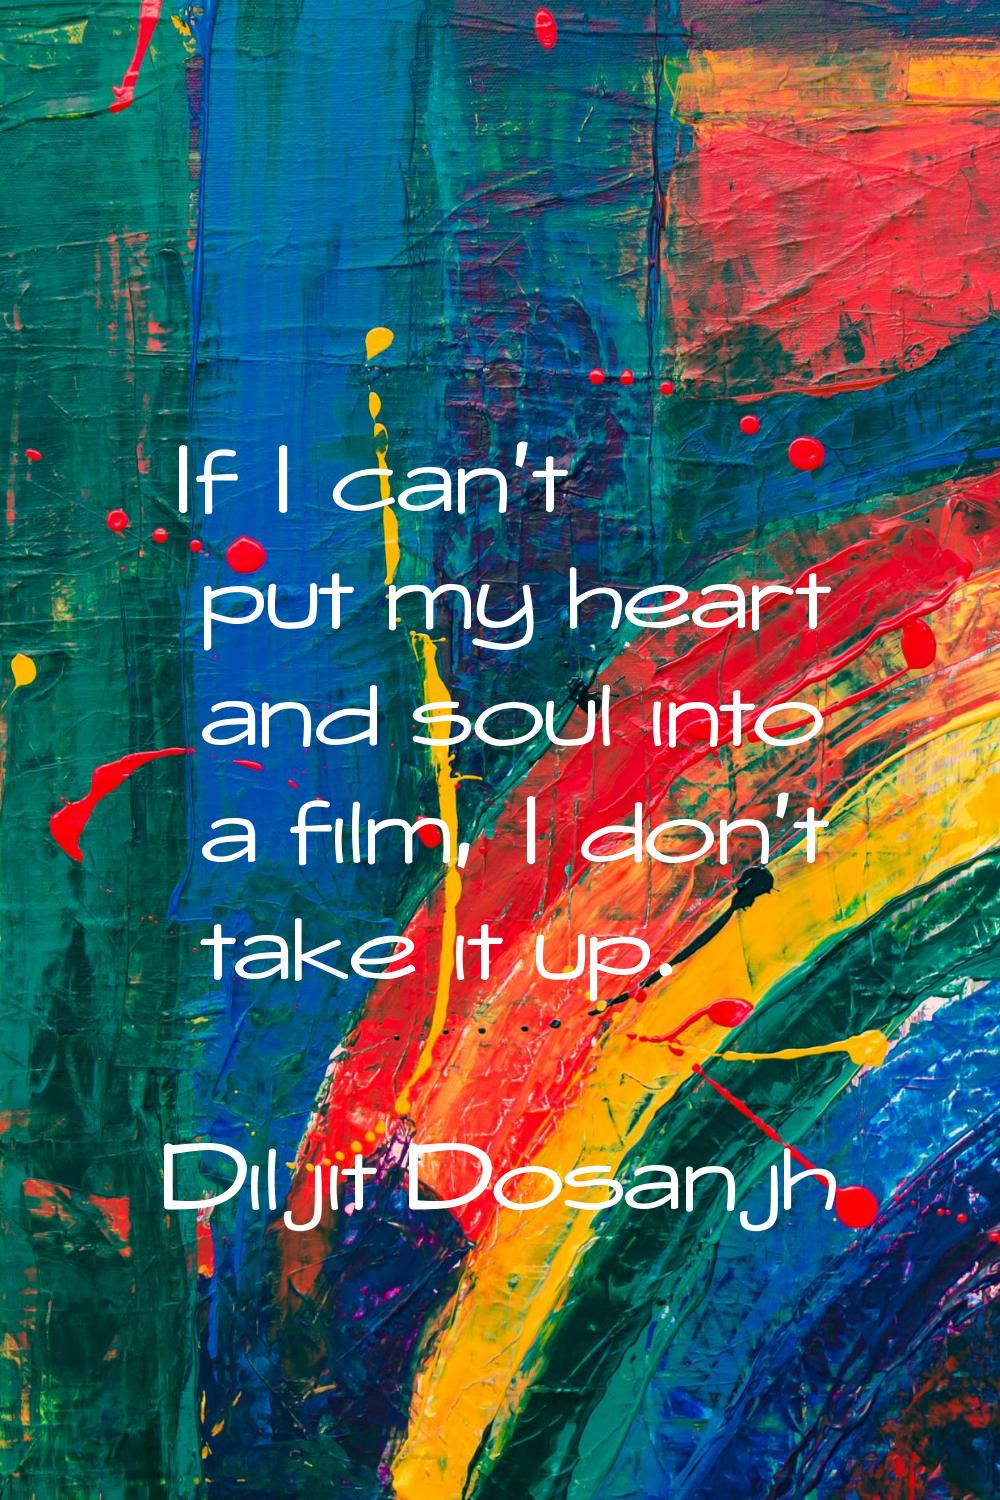 If I can't put my heart and soul into a film, I don't take it up.